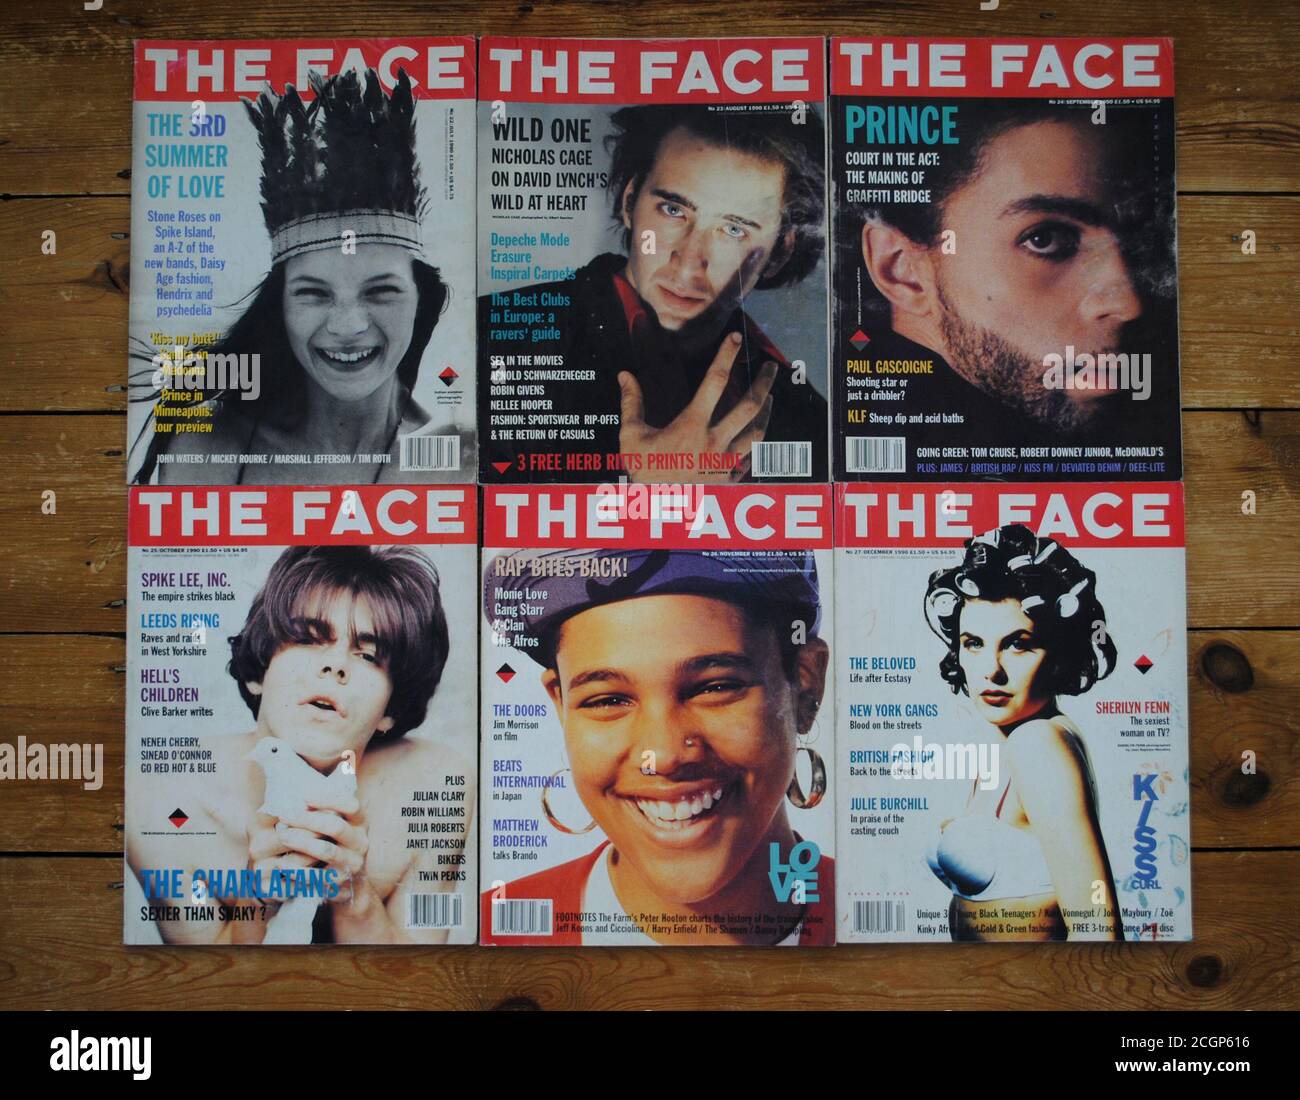 Insieme sono 6 copertine dell'iconica rivista Face dal 1990 luglio a dicembre, con Nicholas Cage, Tim Burgress, Prince, Monie Love e Kate Moss Foto Stock